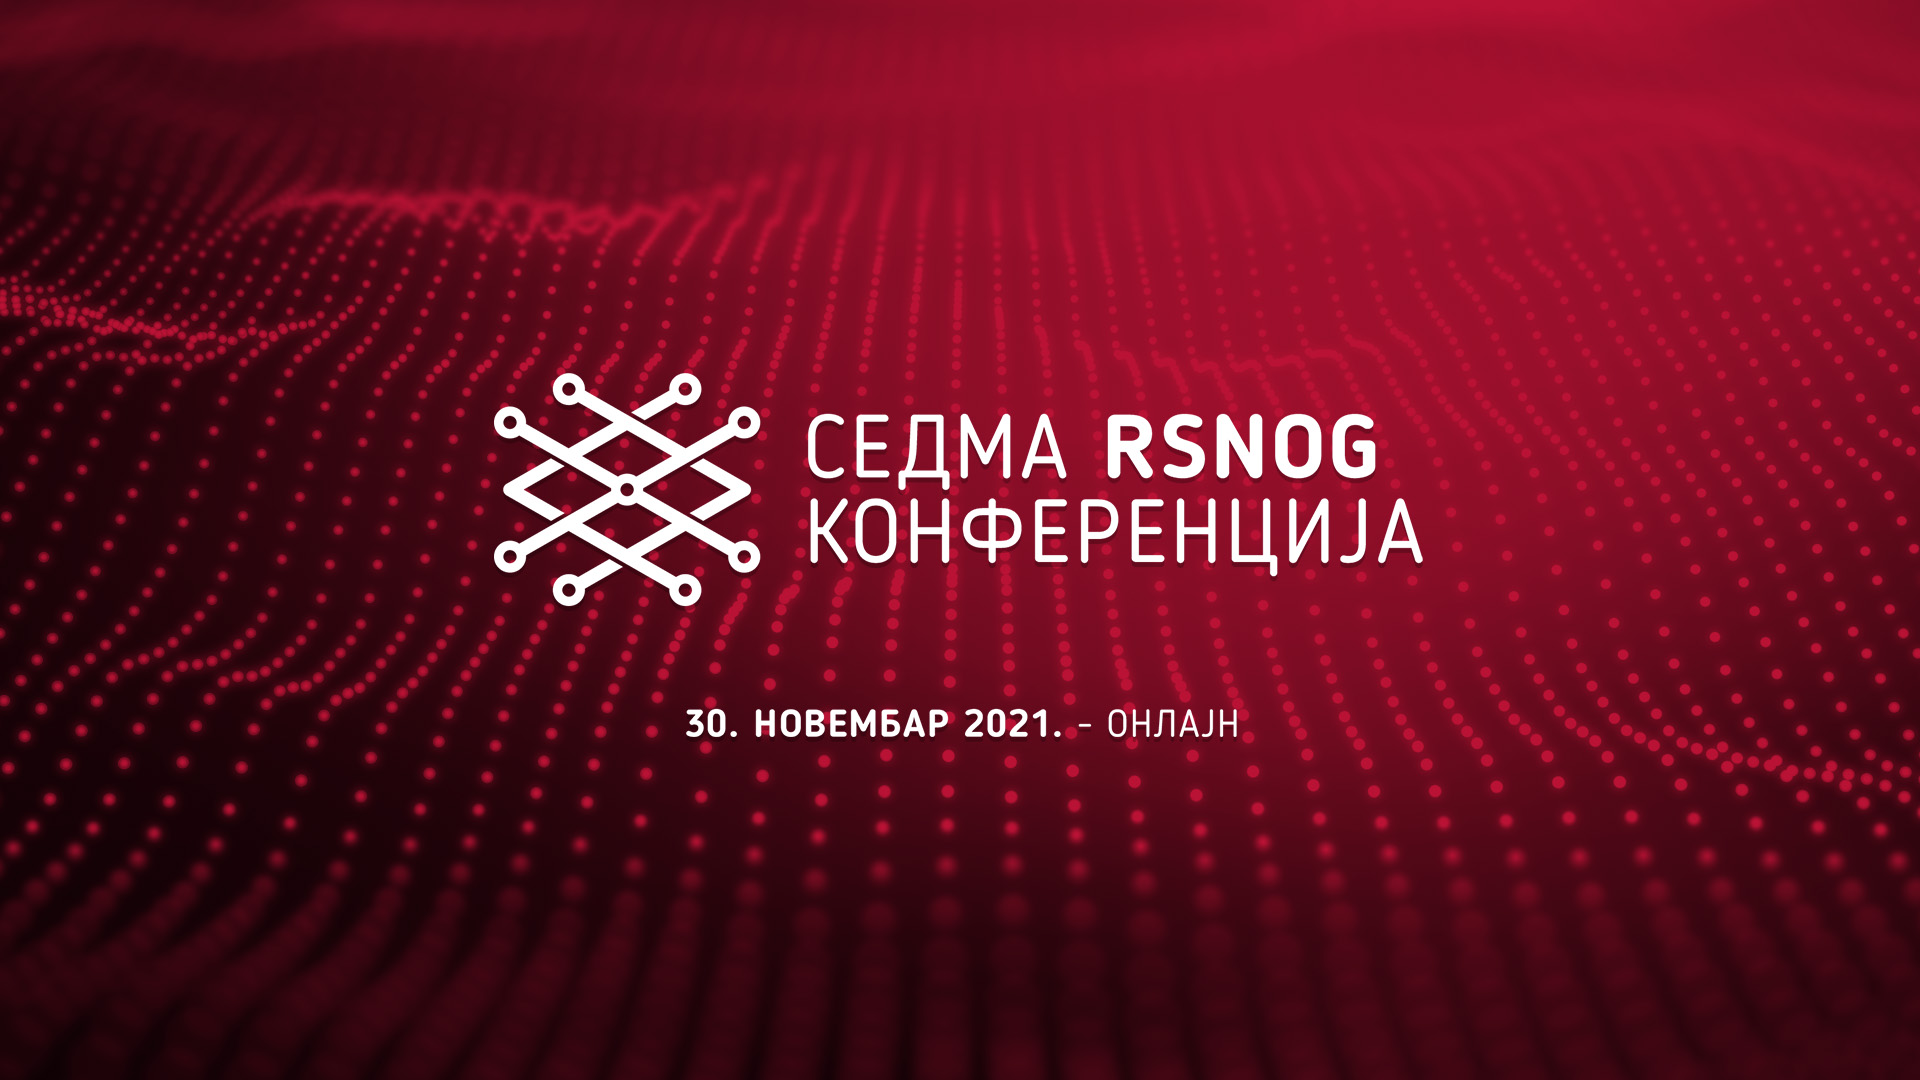 Sedma RSNOG konferencija – o bezbednijem, bržem i stabilnijem internetu